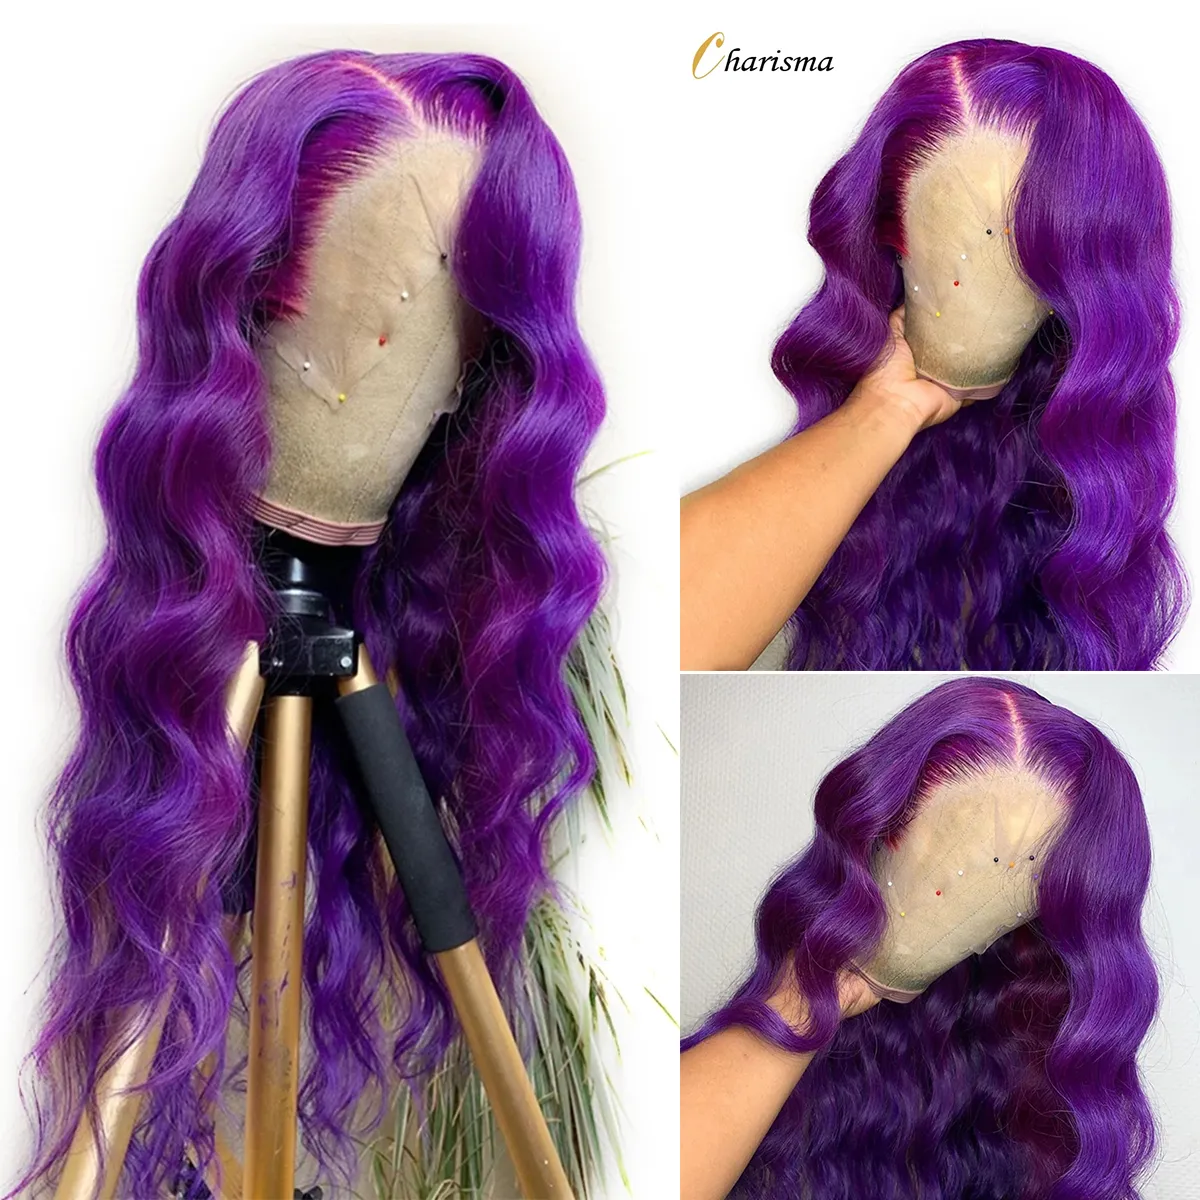 Parrucca anteriore in pizzo a onde lunghe con parte laterale di colore viola Parrucche sintetiche per donne nere/bianche con attaccatura dei capelli naturale